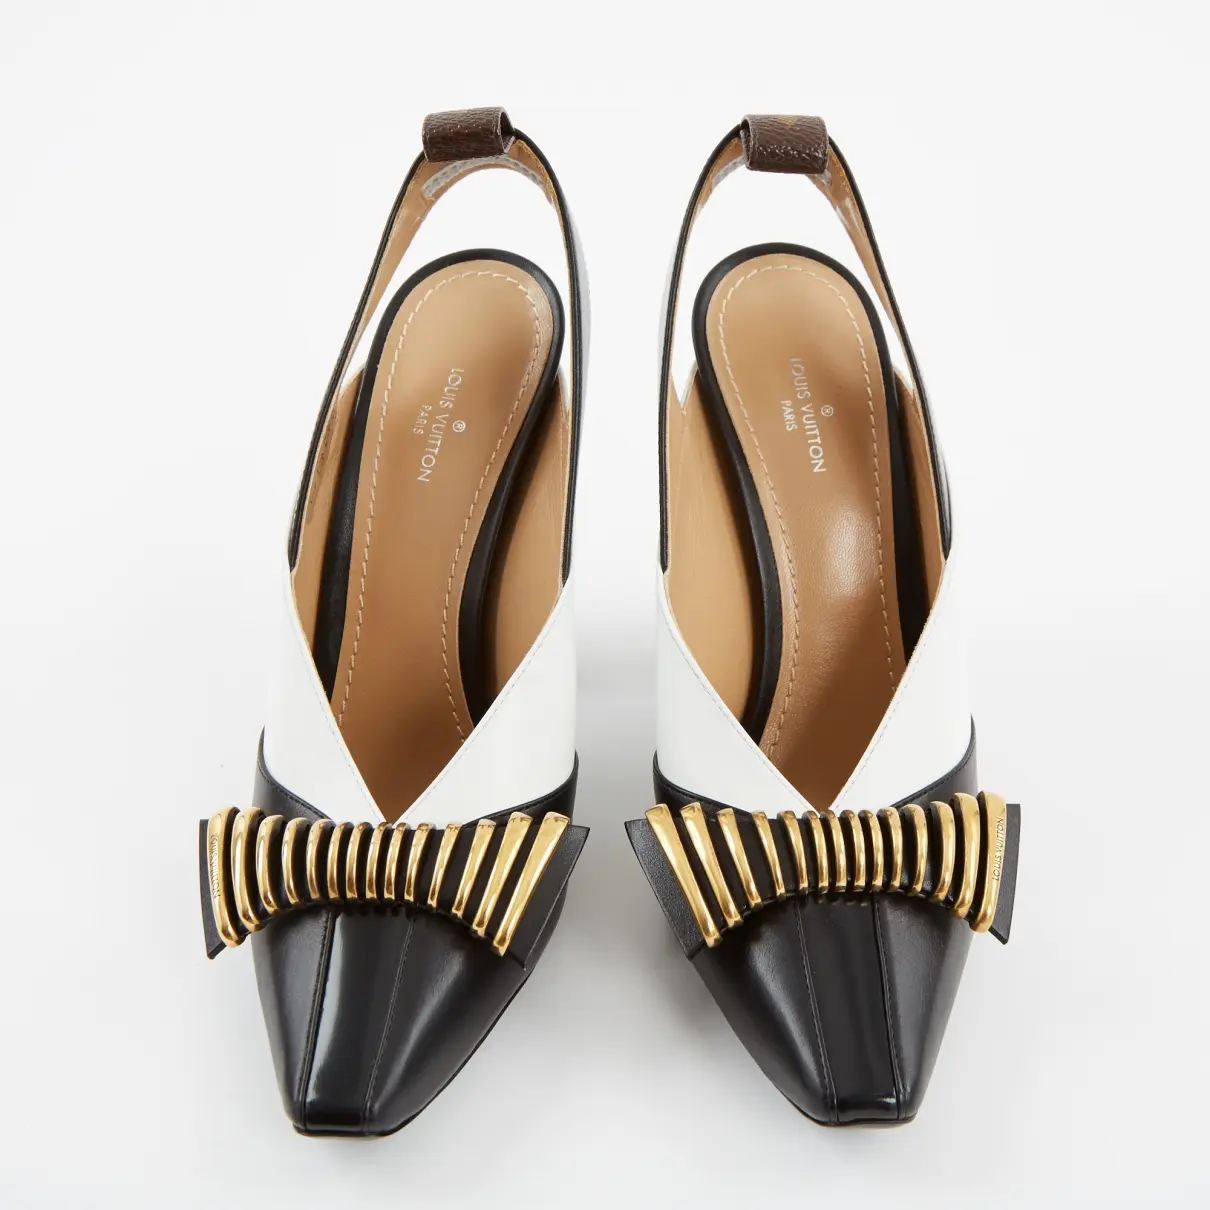 Buy Louis Vuitton Headline leather heels online